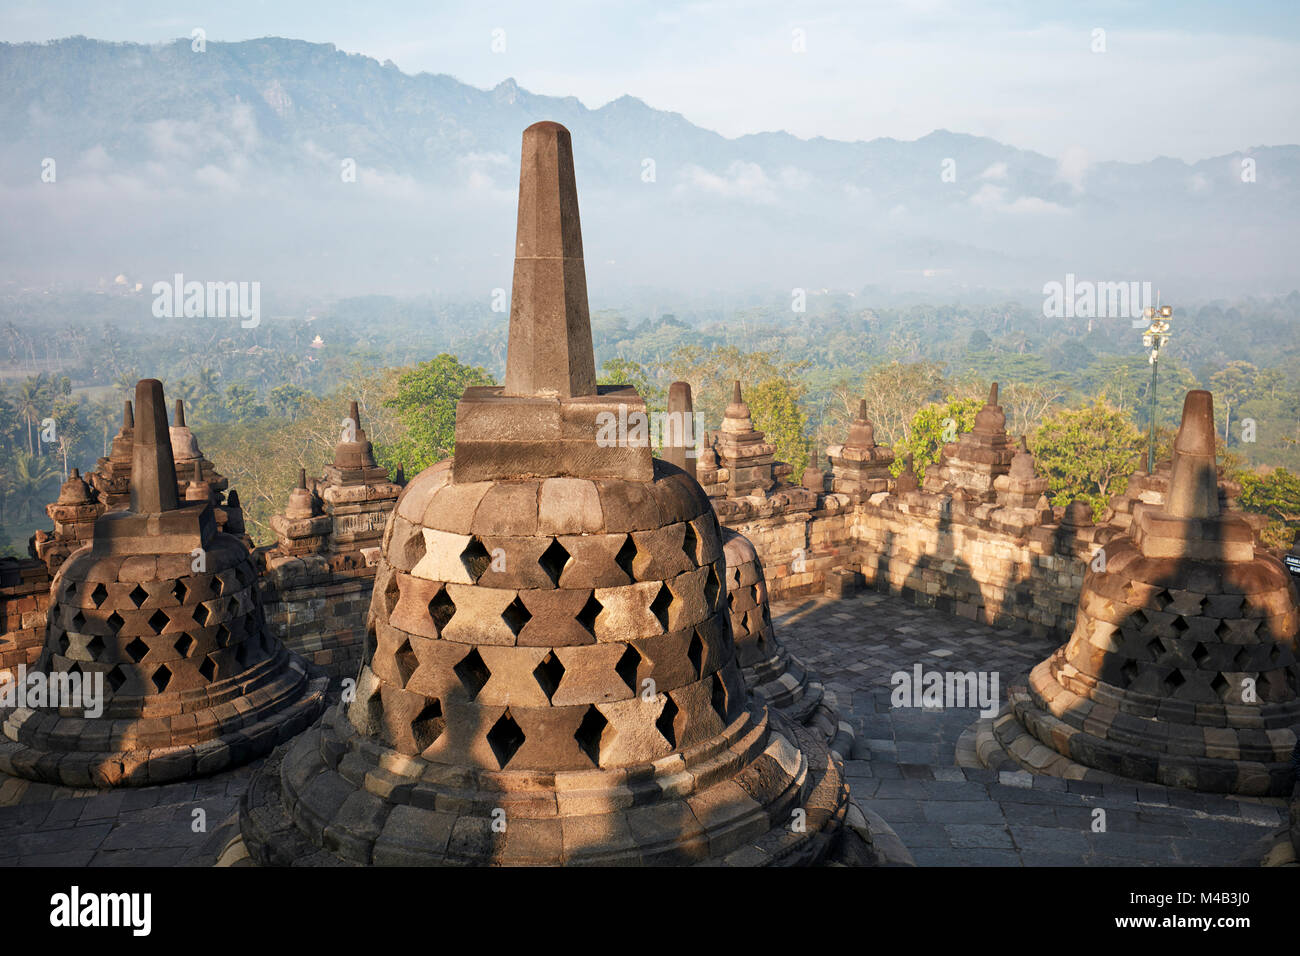 Los rombos perforados stupas en el templo budista de Borobudur. Regency Magelang, Java, Indonesia. Foto de stock